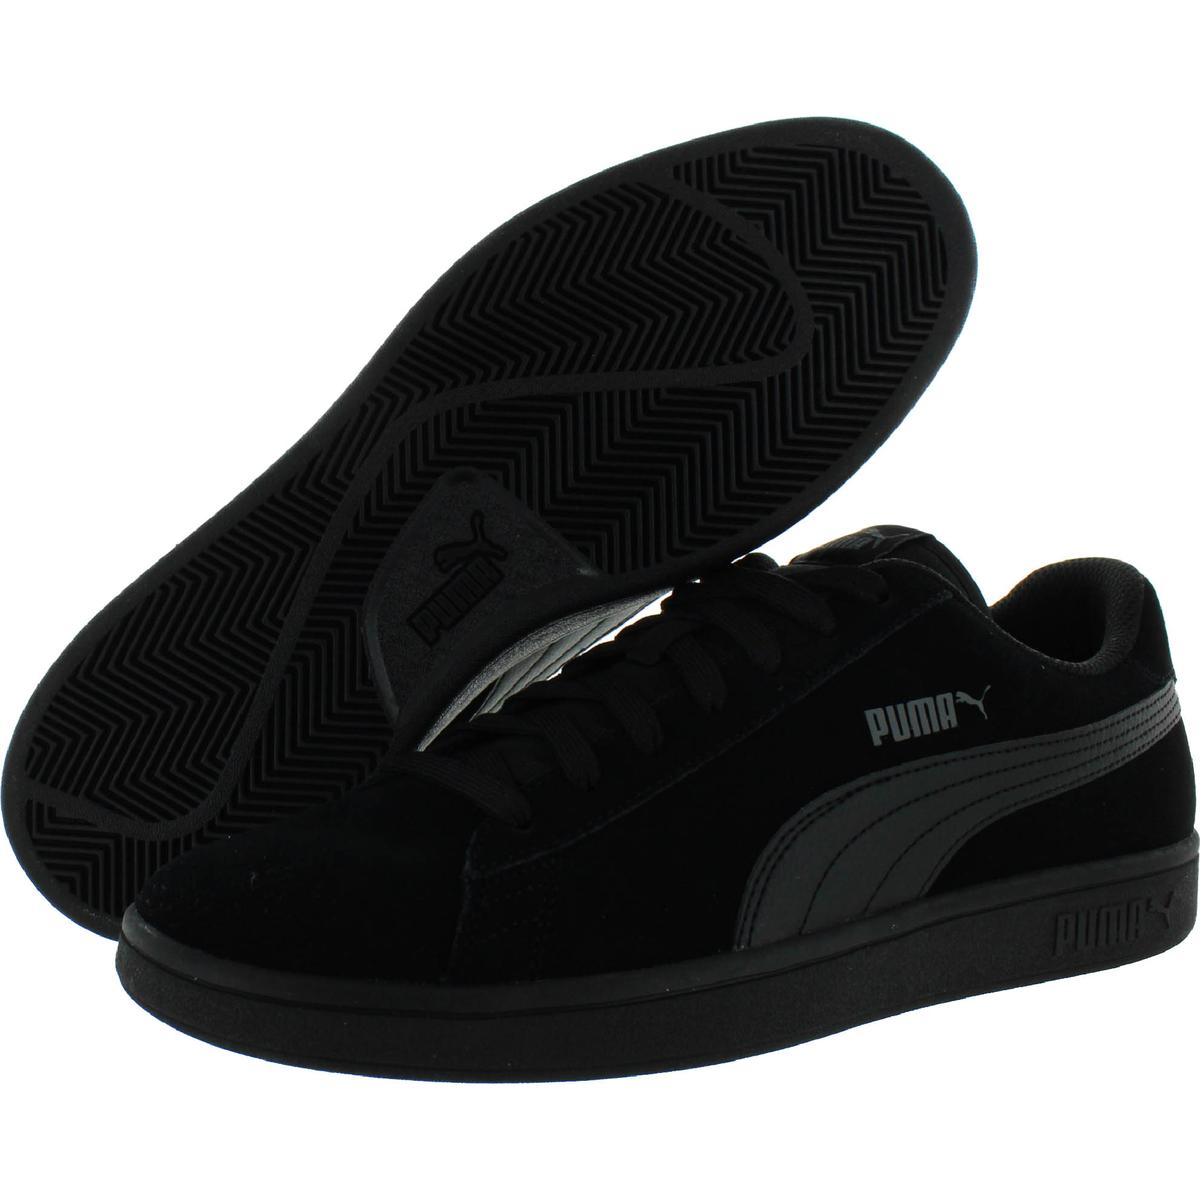 Puma Mens Smash V2 Black Suede Skate Shoes Sneakers 4 Medium D Bhfo 8490 Ebay 